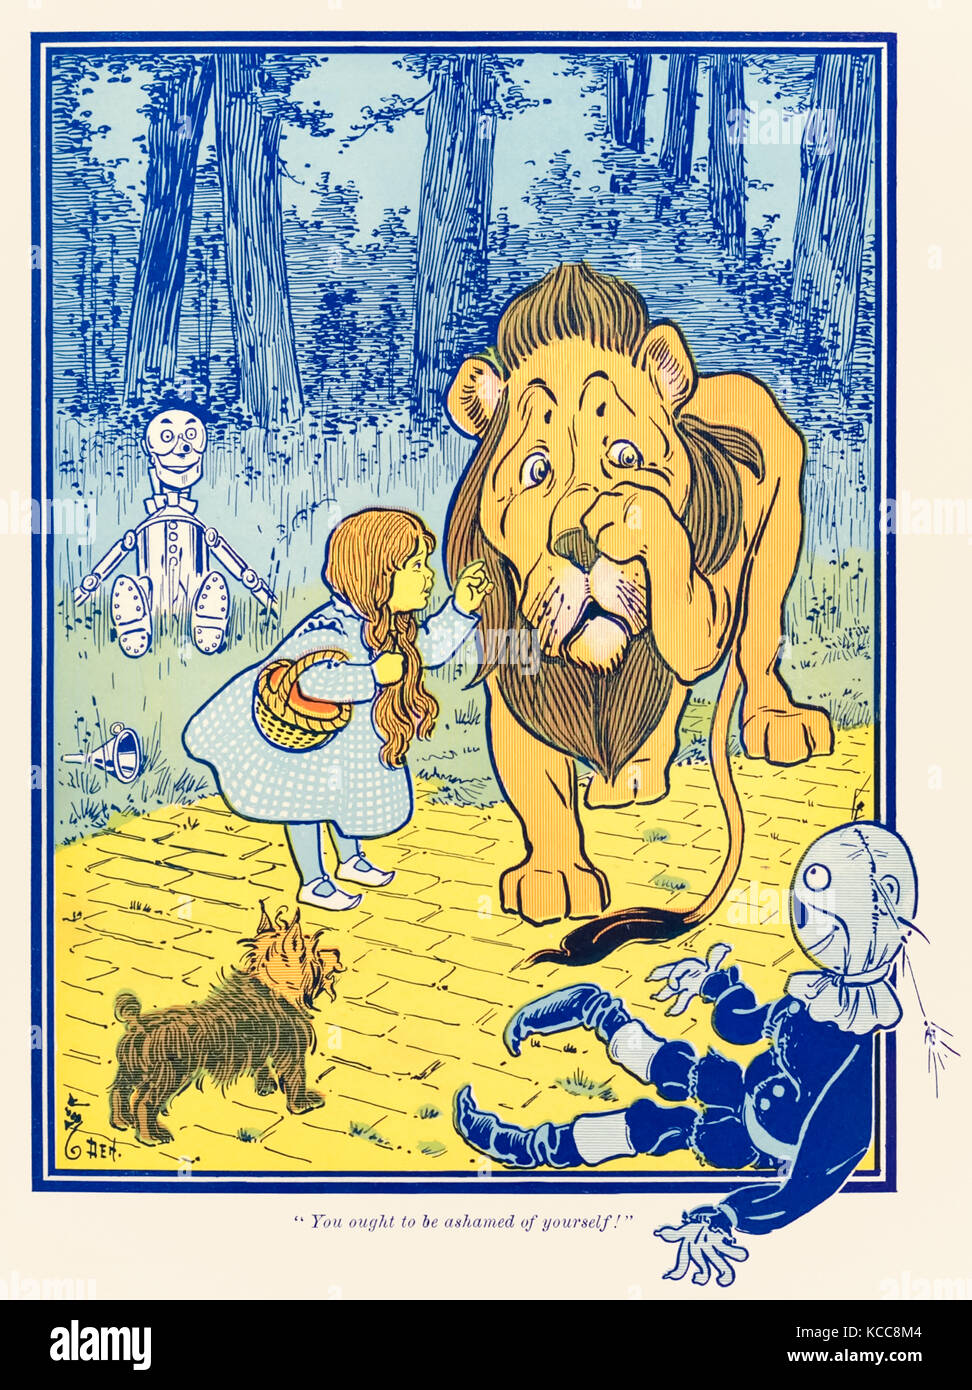 "Vous devriez avoir honte de vous-même !" de "The Wonderful Wizard of Oz' par L. Frank Baum (1856-1919) avec des photos de W. W. Denslow (1856-1915). Voir plus d'informations ci-dessous. Banque D'Images